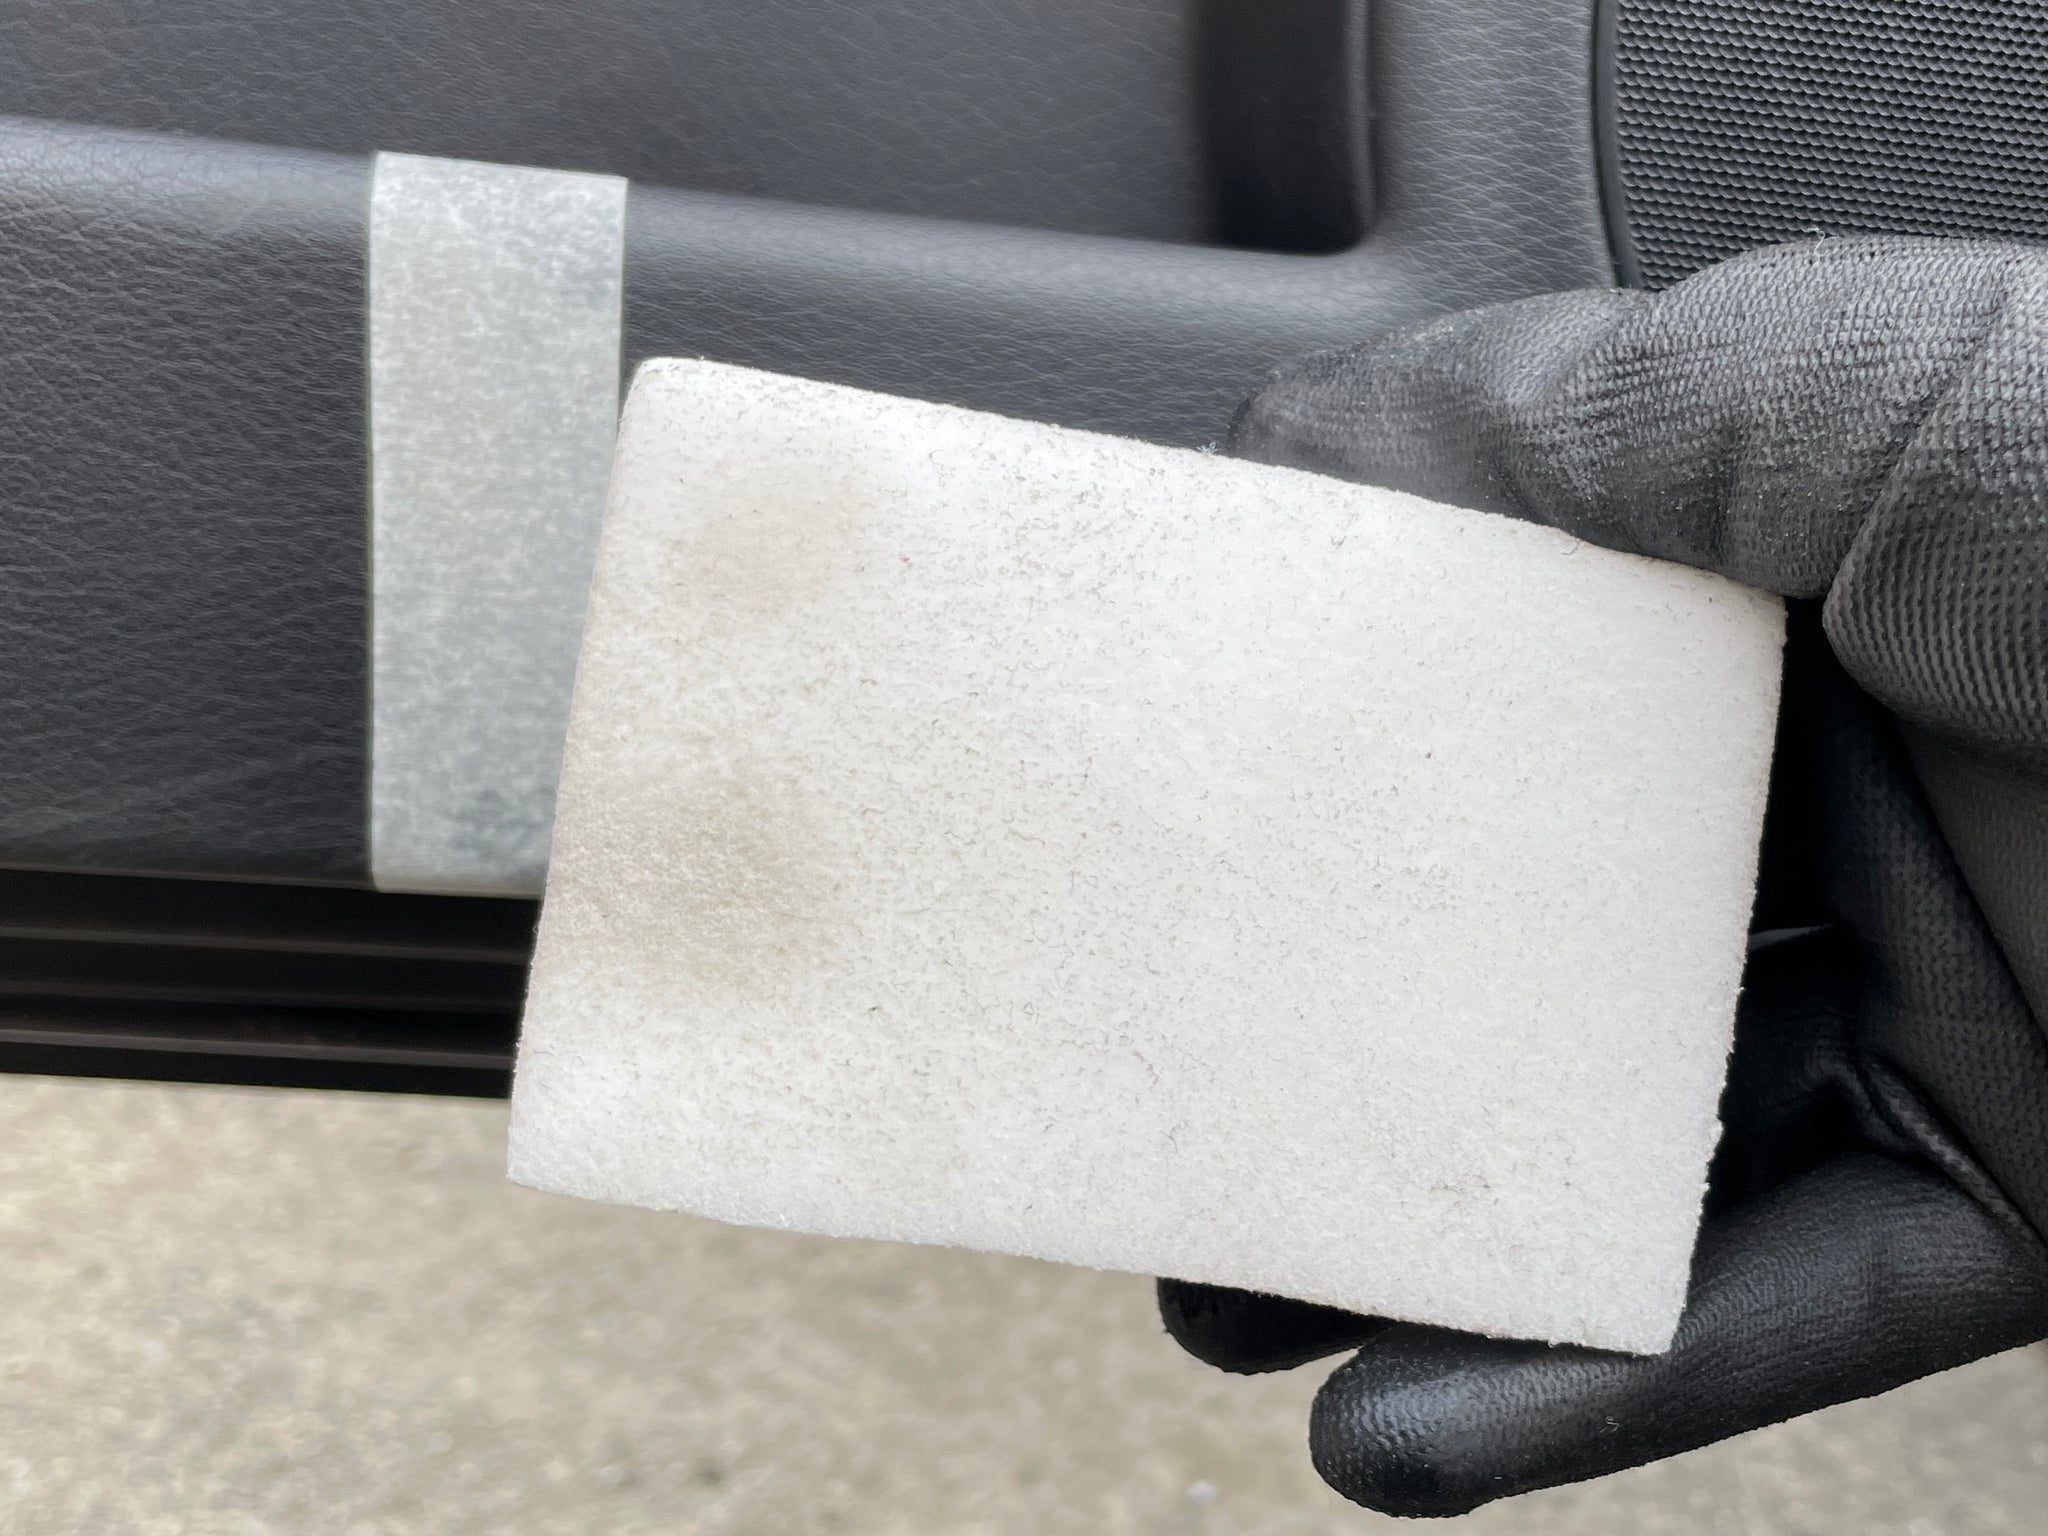 4pcs Auto Innenvlies Schrubben Schwamm für Kunststoff Leder Auto Reinigung  Mikrofaser Handtuch Wachs Schwamm Auto Reinigung Werkzeuge